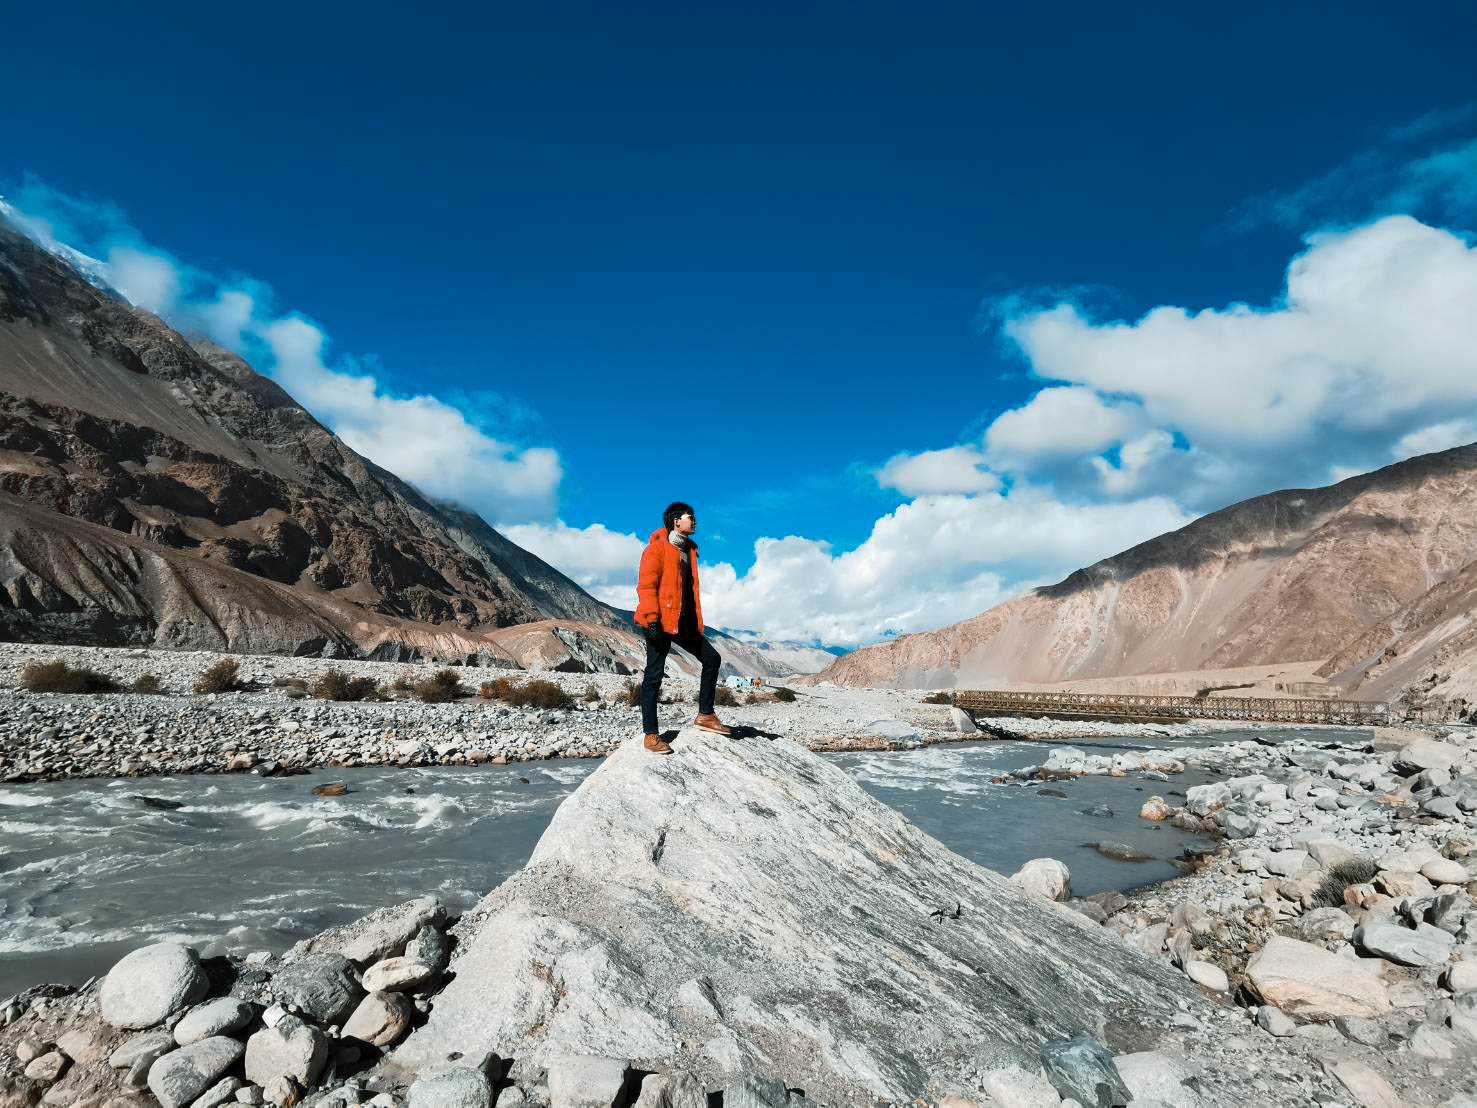 แม่น้ำ Shayok ทัวร์เลห์ ลาดักห์ เที่ยวเลห์ ลาดักห์ Leh Ladakh Tour leh ladakh